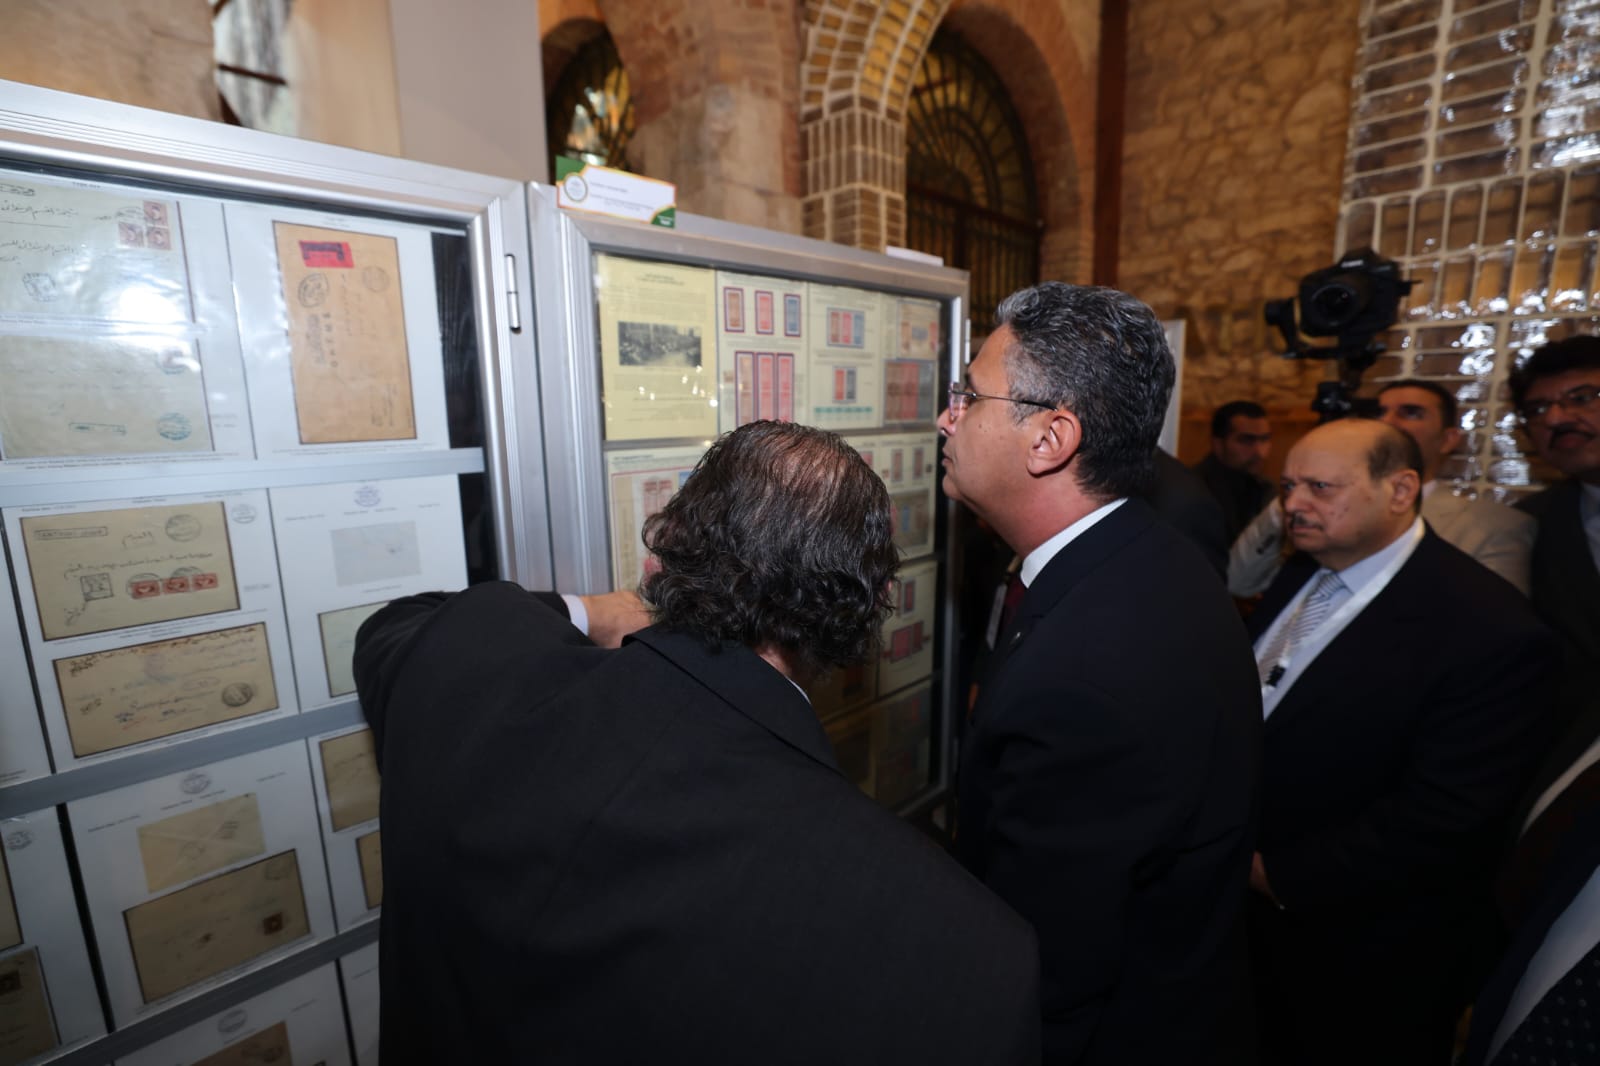 افتتاح المعرض العربي للطوابع